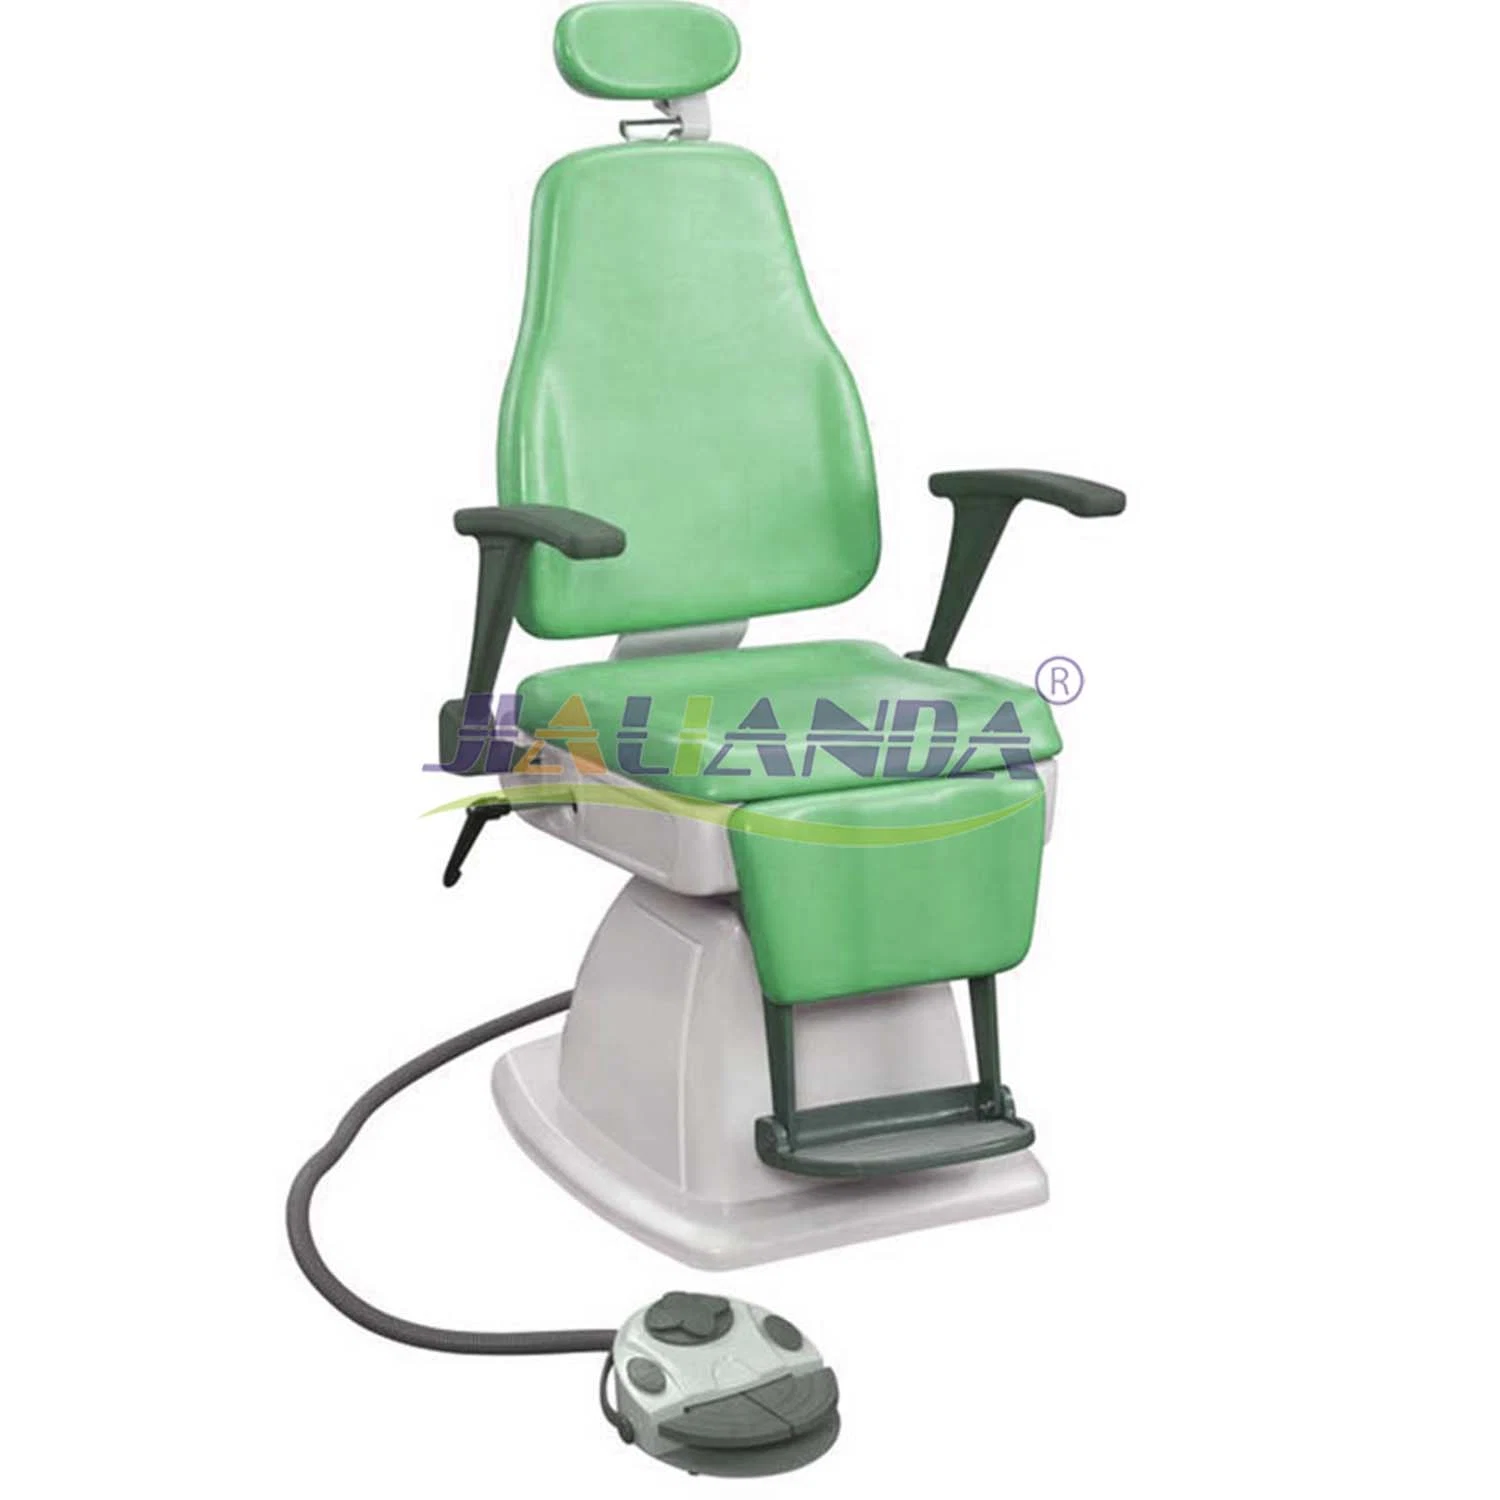 Mobília hospitalar Electric cadeira do paciente